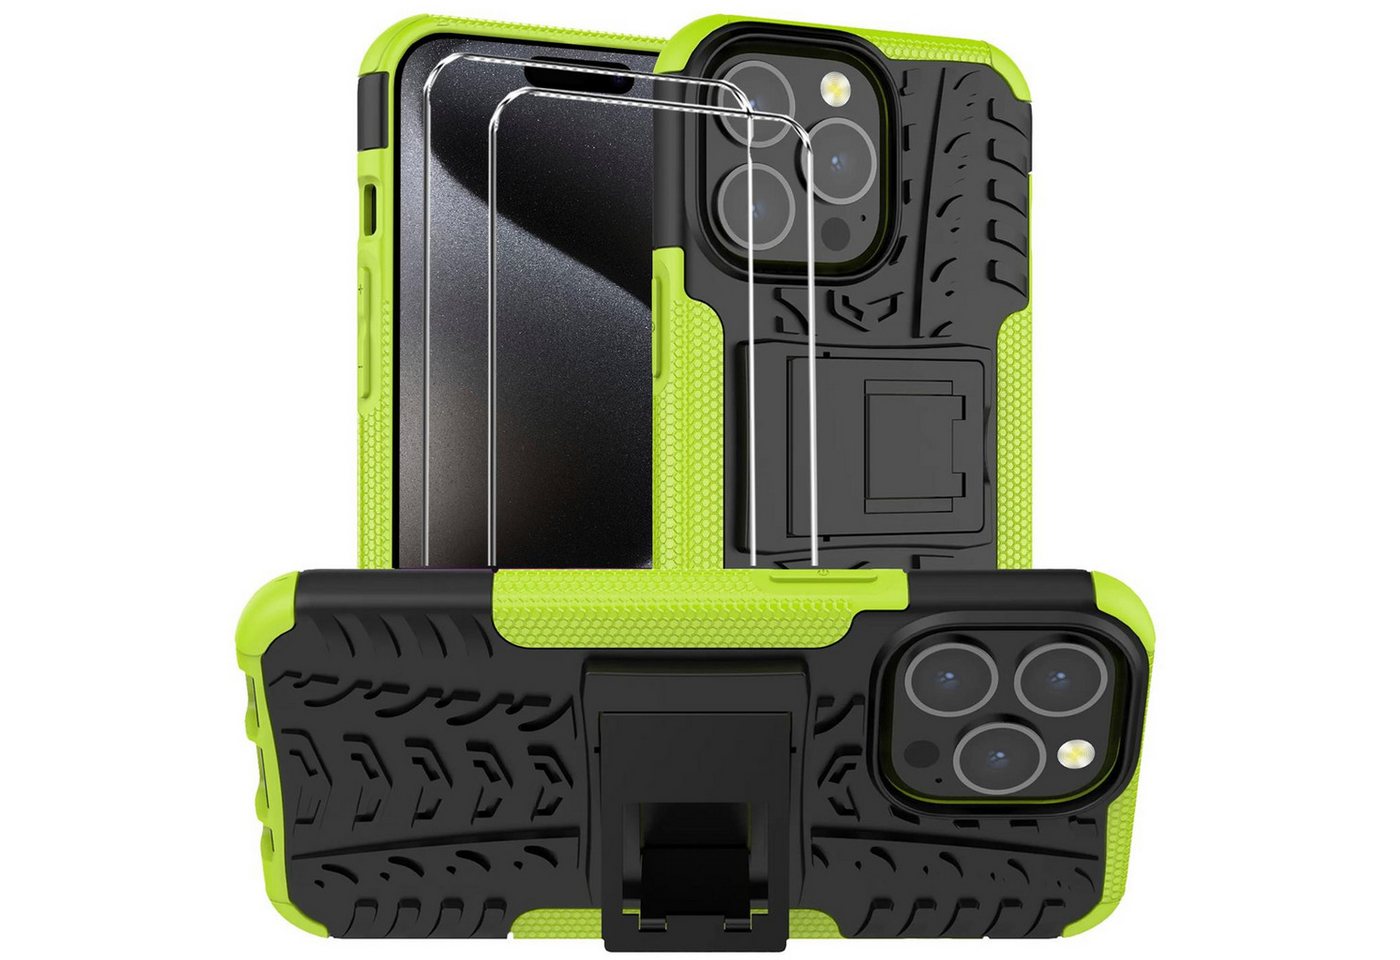 CoolGadget Handyhülle Grün als 2in1 Schutz Cover Set für das Apple iPhone 7 / 8 / SE 2 4,7 Zoll, 2x Glas Display Schutz Folie + 1x Case Hülle für iPhone 7 8 SE 2 von CoolGadget